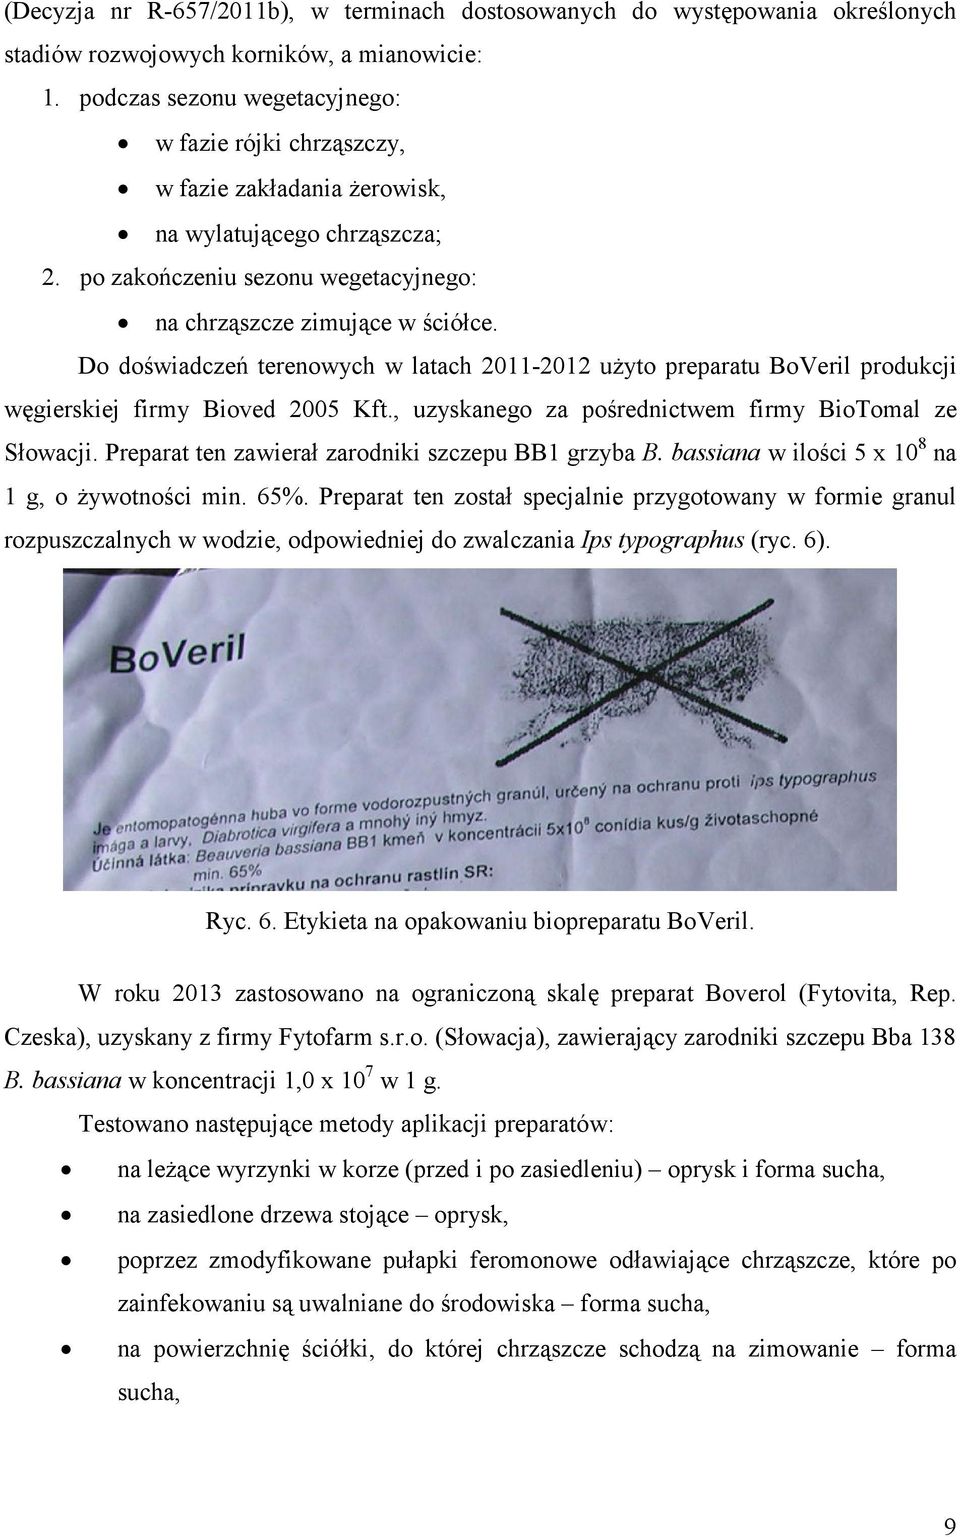 Do doświadczeń terenowych w latach 2011-2012 użyto preparatu BoVeril produkcji węgierskiej firmy Bioved 2005 Kft., uzyskanego za pośrednictwem firmy BioTomal ze Słowacji.